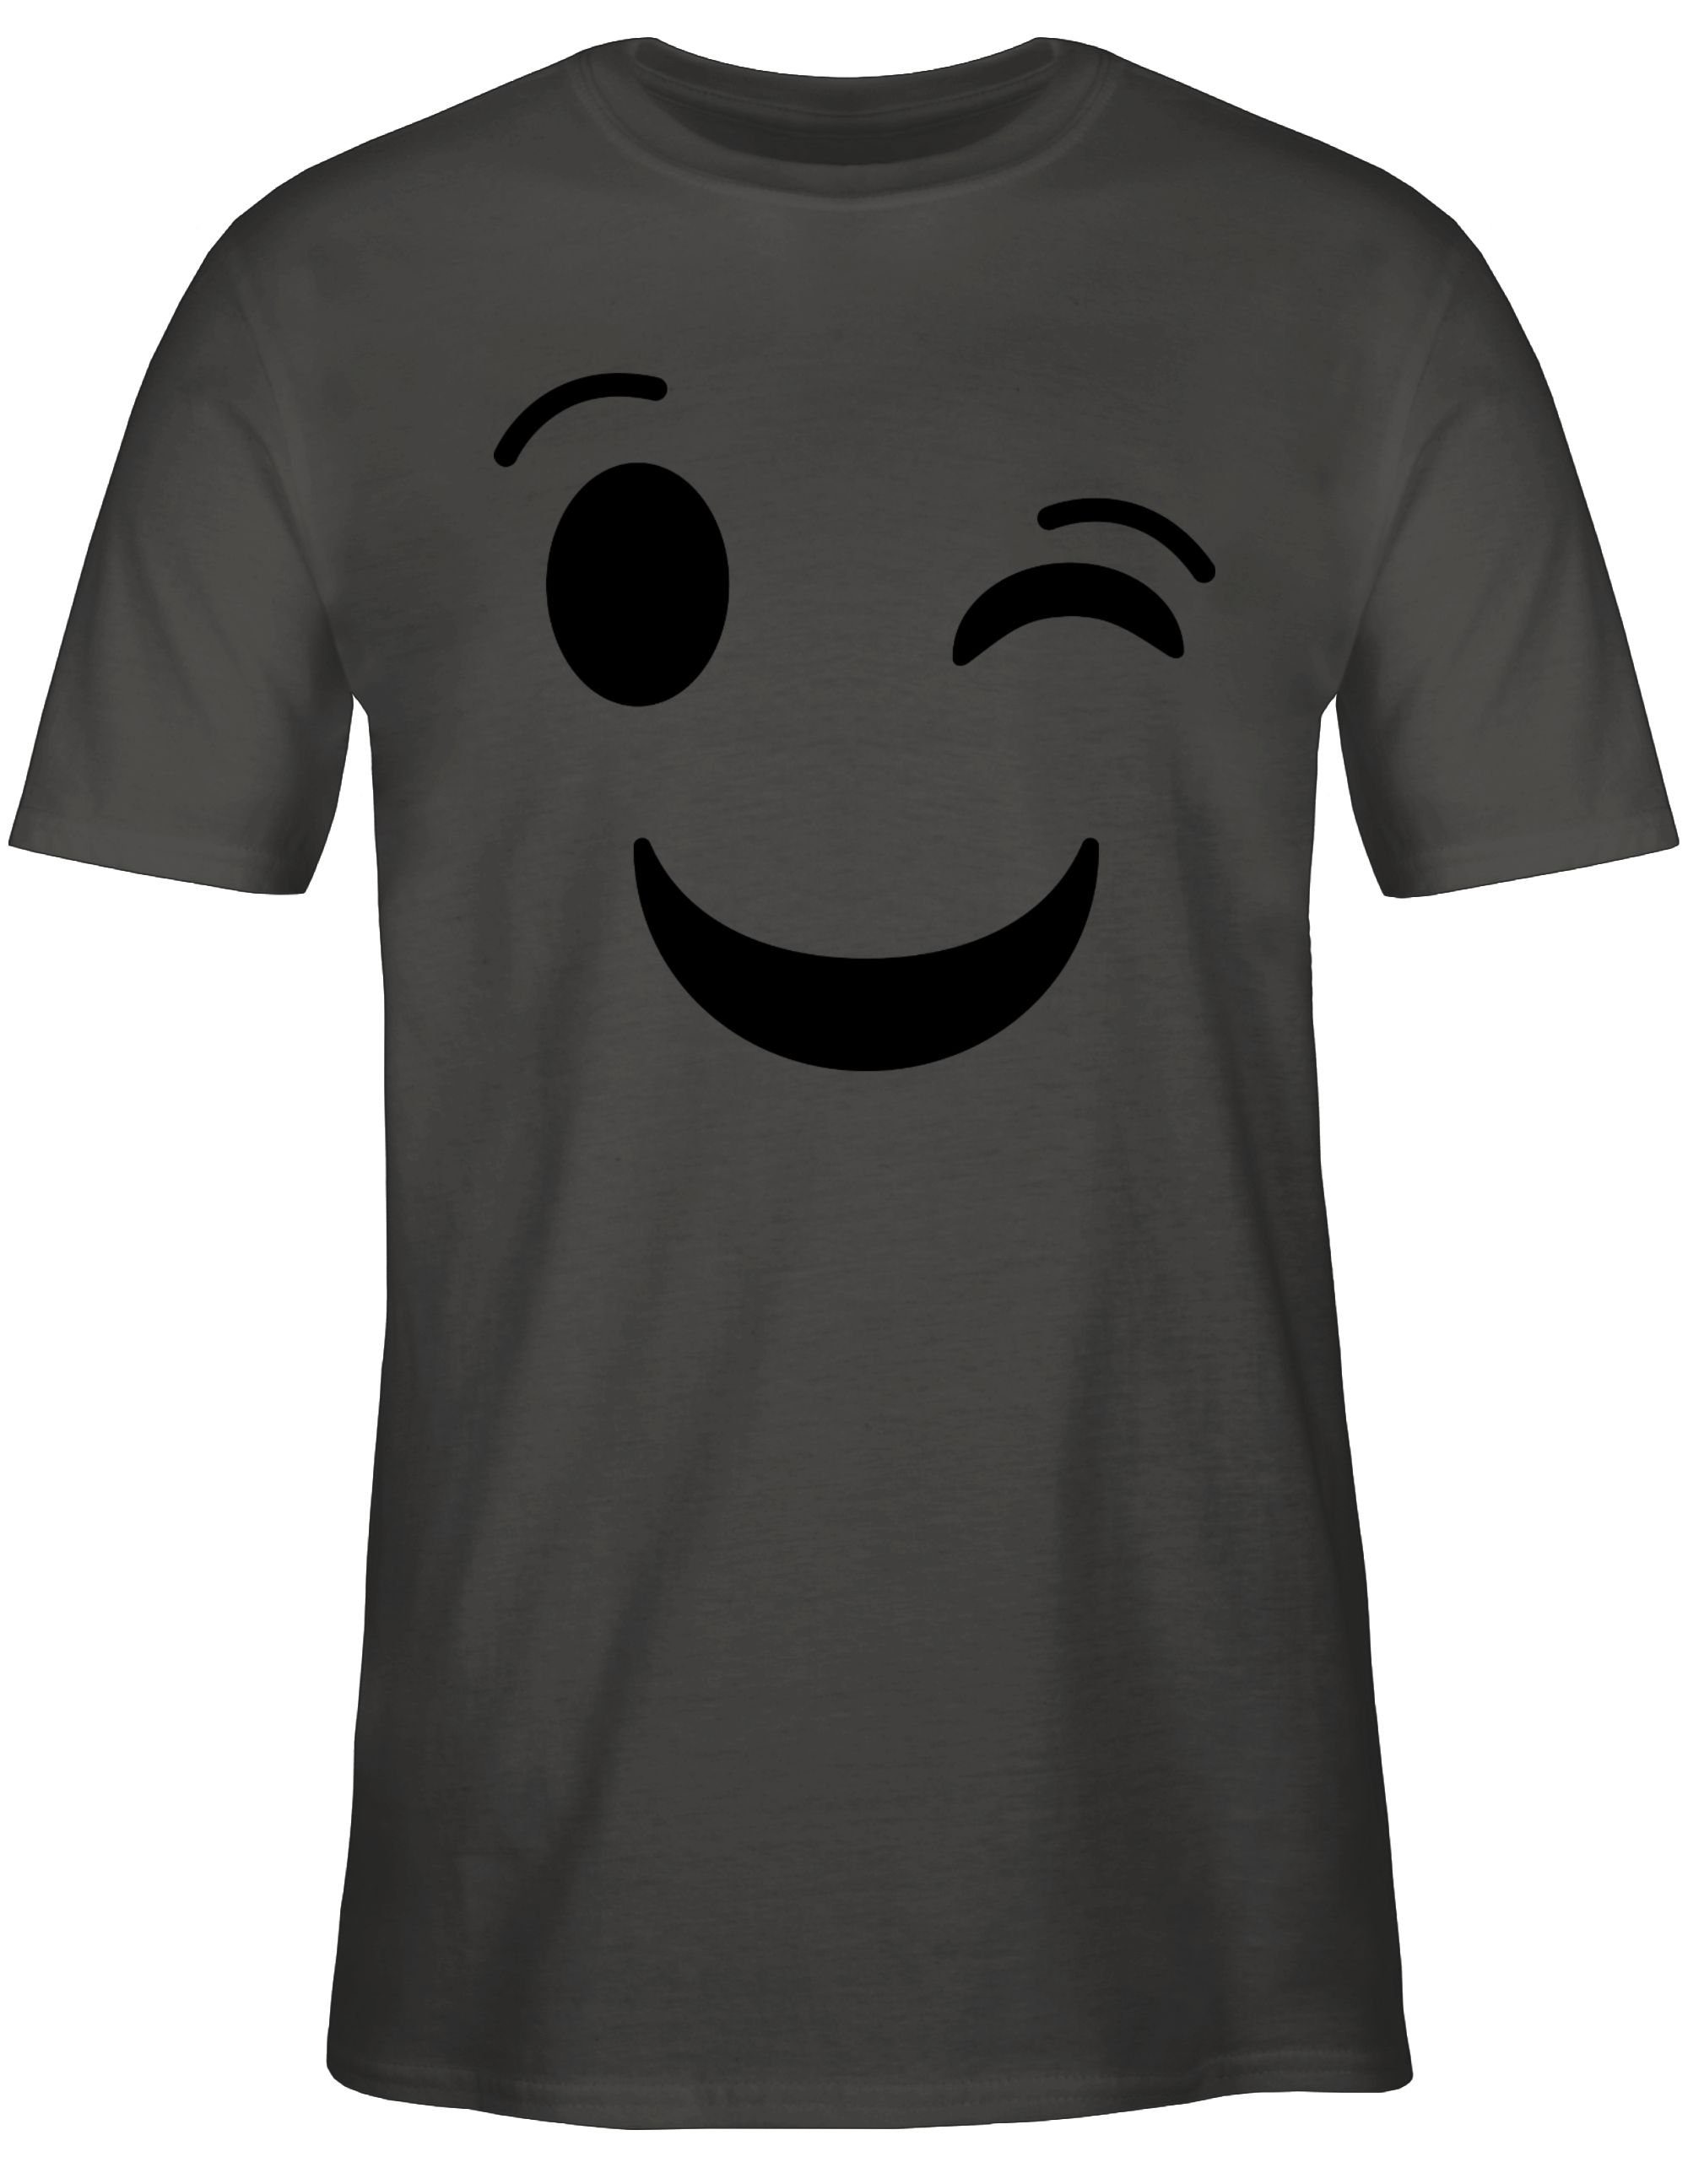 Karneval Karneval Outfit Dunkelgrau Emoticon T-Shirt 3 Shirtracer Zwinker